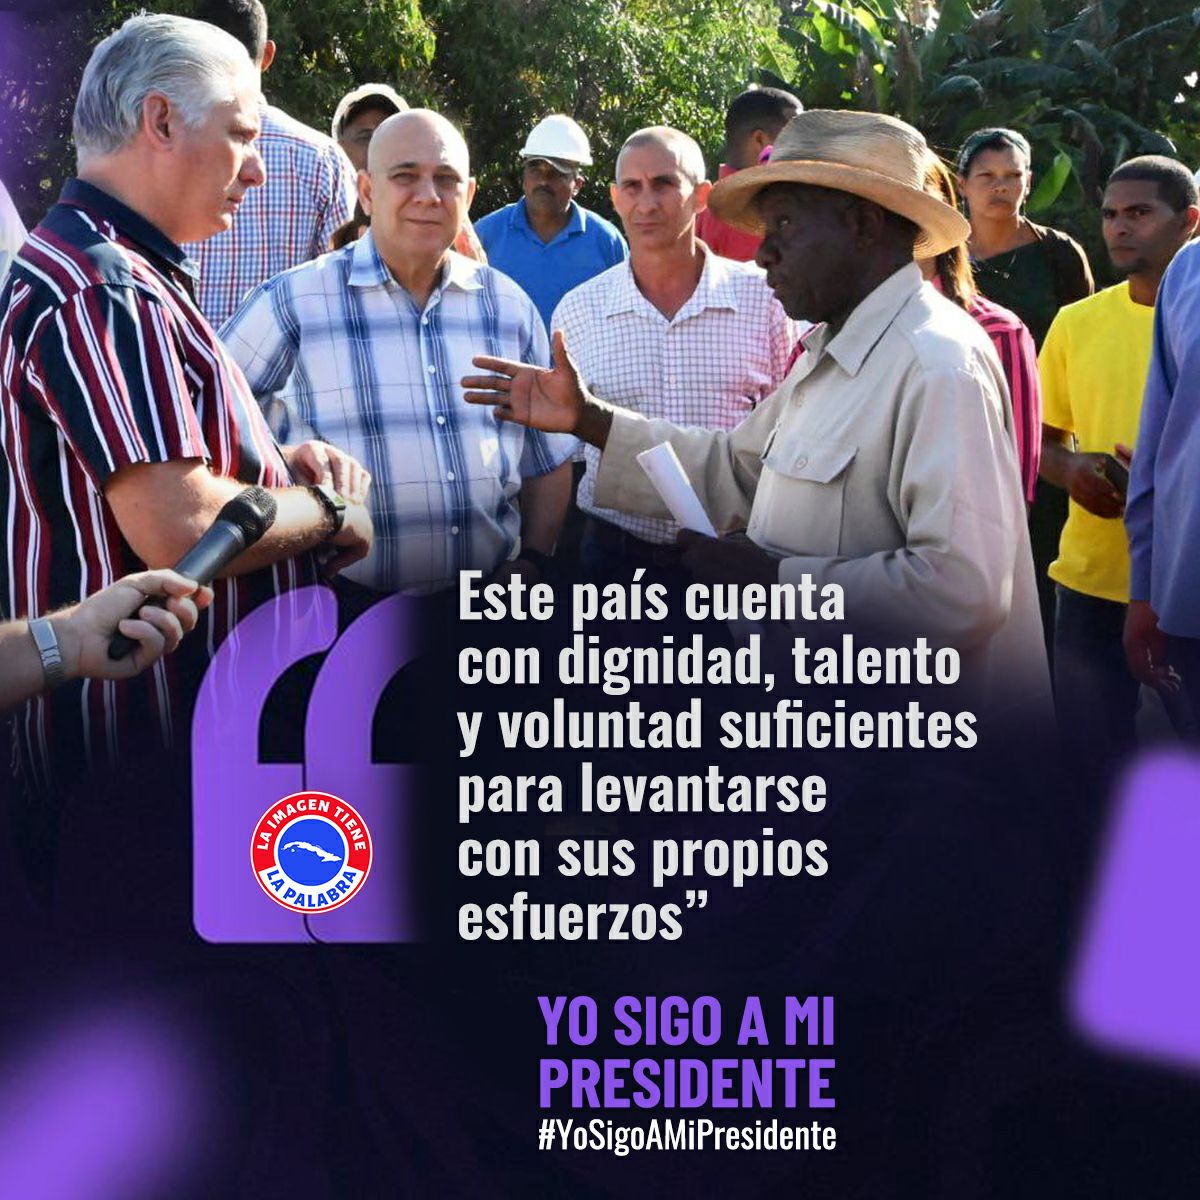 #PorCubaJuntosCreamos #UnidosPorCuba #CubaPorLaVida #CubaCoopera @cubacooperaven @mmcvenFALP @Niurkaherrera75 @DrYusleivy 'Este país cuenta con dignidad, talento y voluntad suficientes para levantarse con sus propios esfuerzos ' #YoSigoAMiPresidente